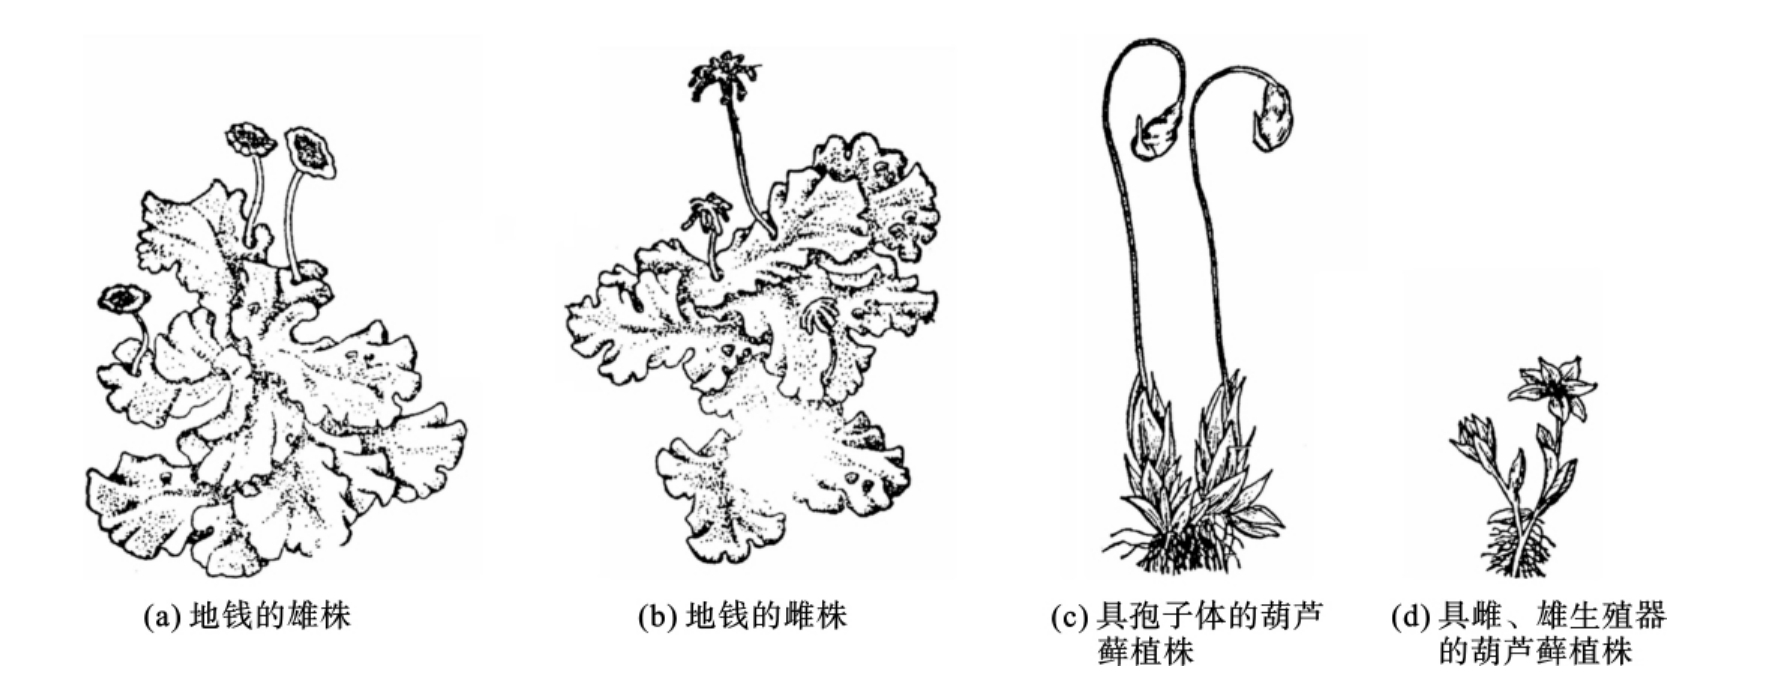 苔藓植物除在自然界里有形成土壤,保持水土,作监测大气污染指示植物的